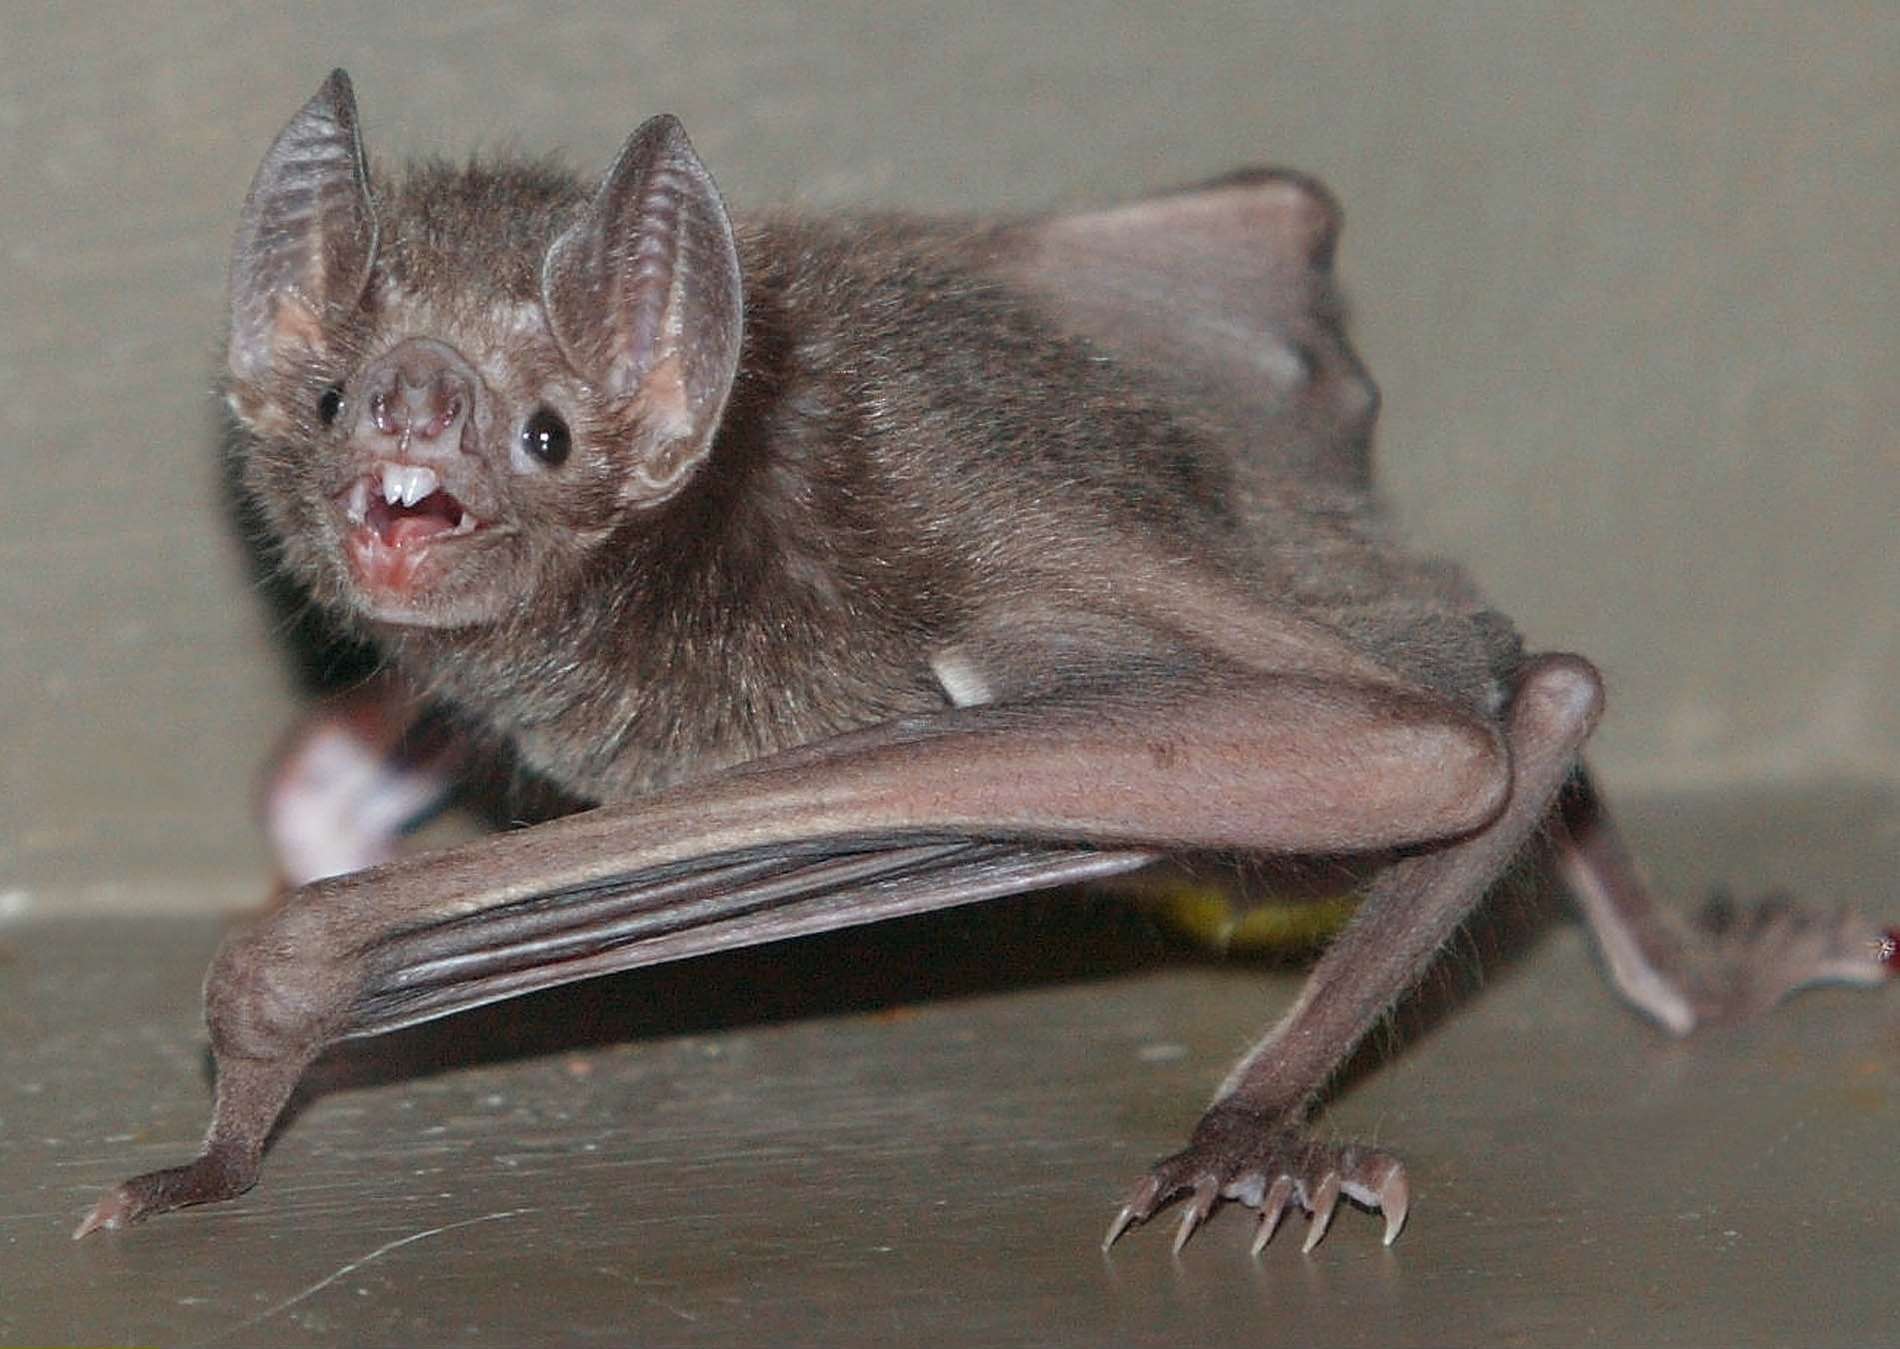 vampire bat wingspan